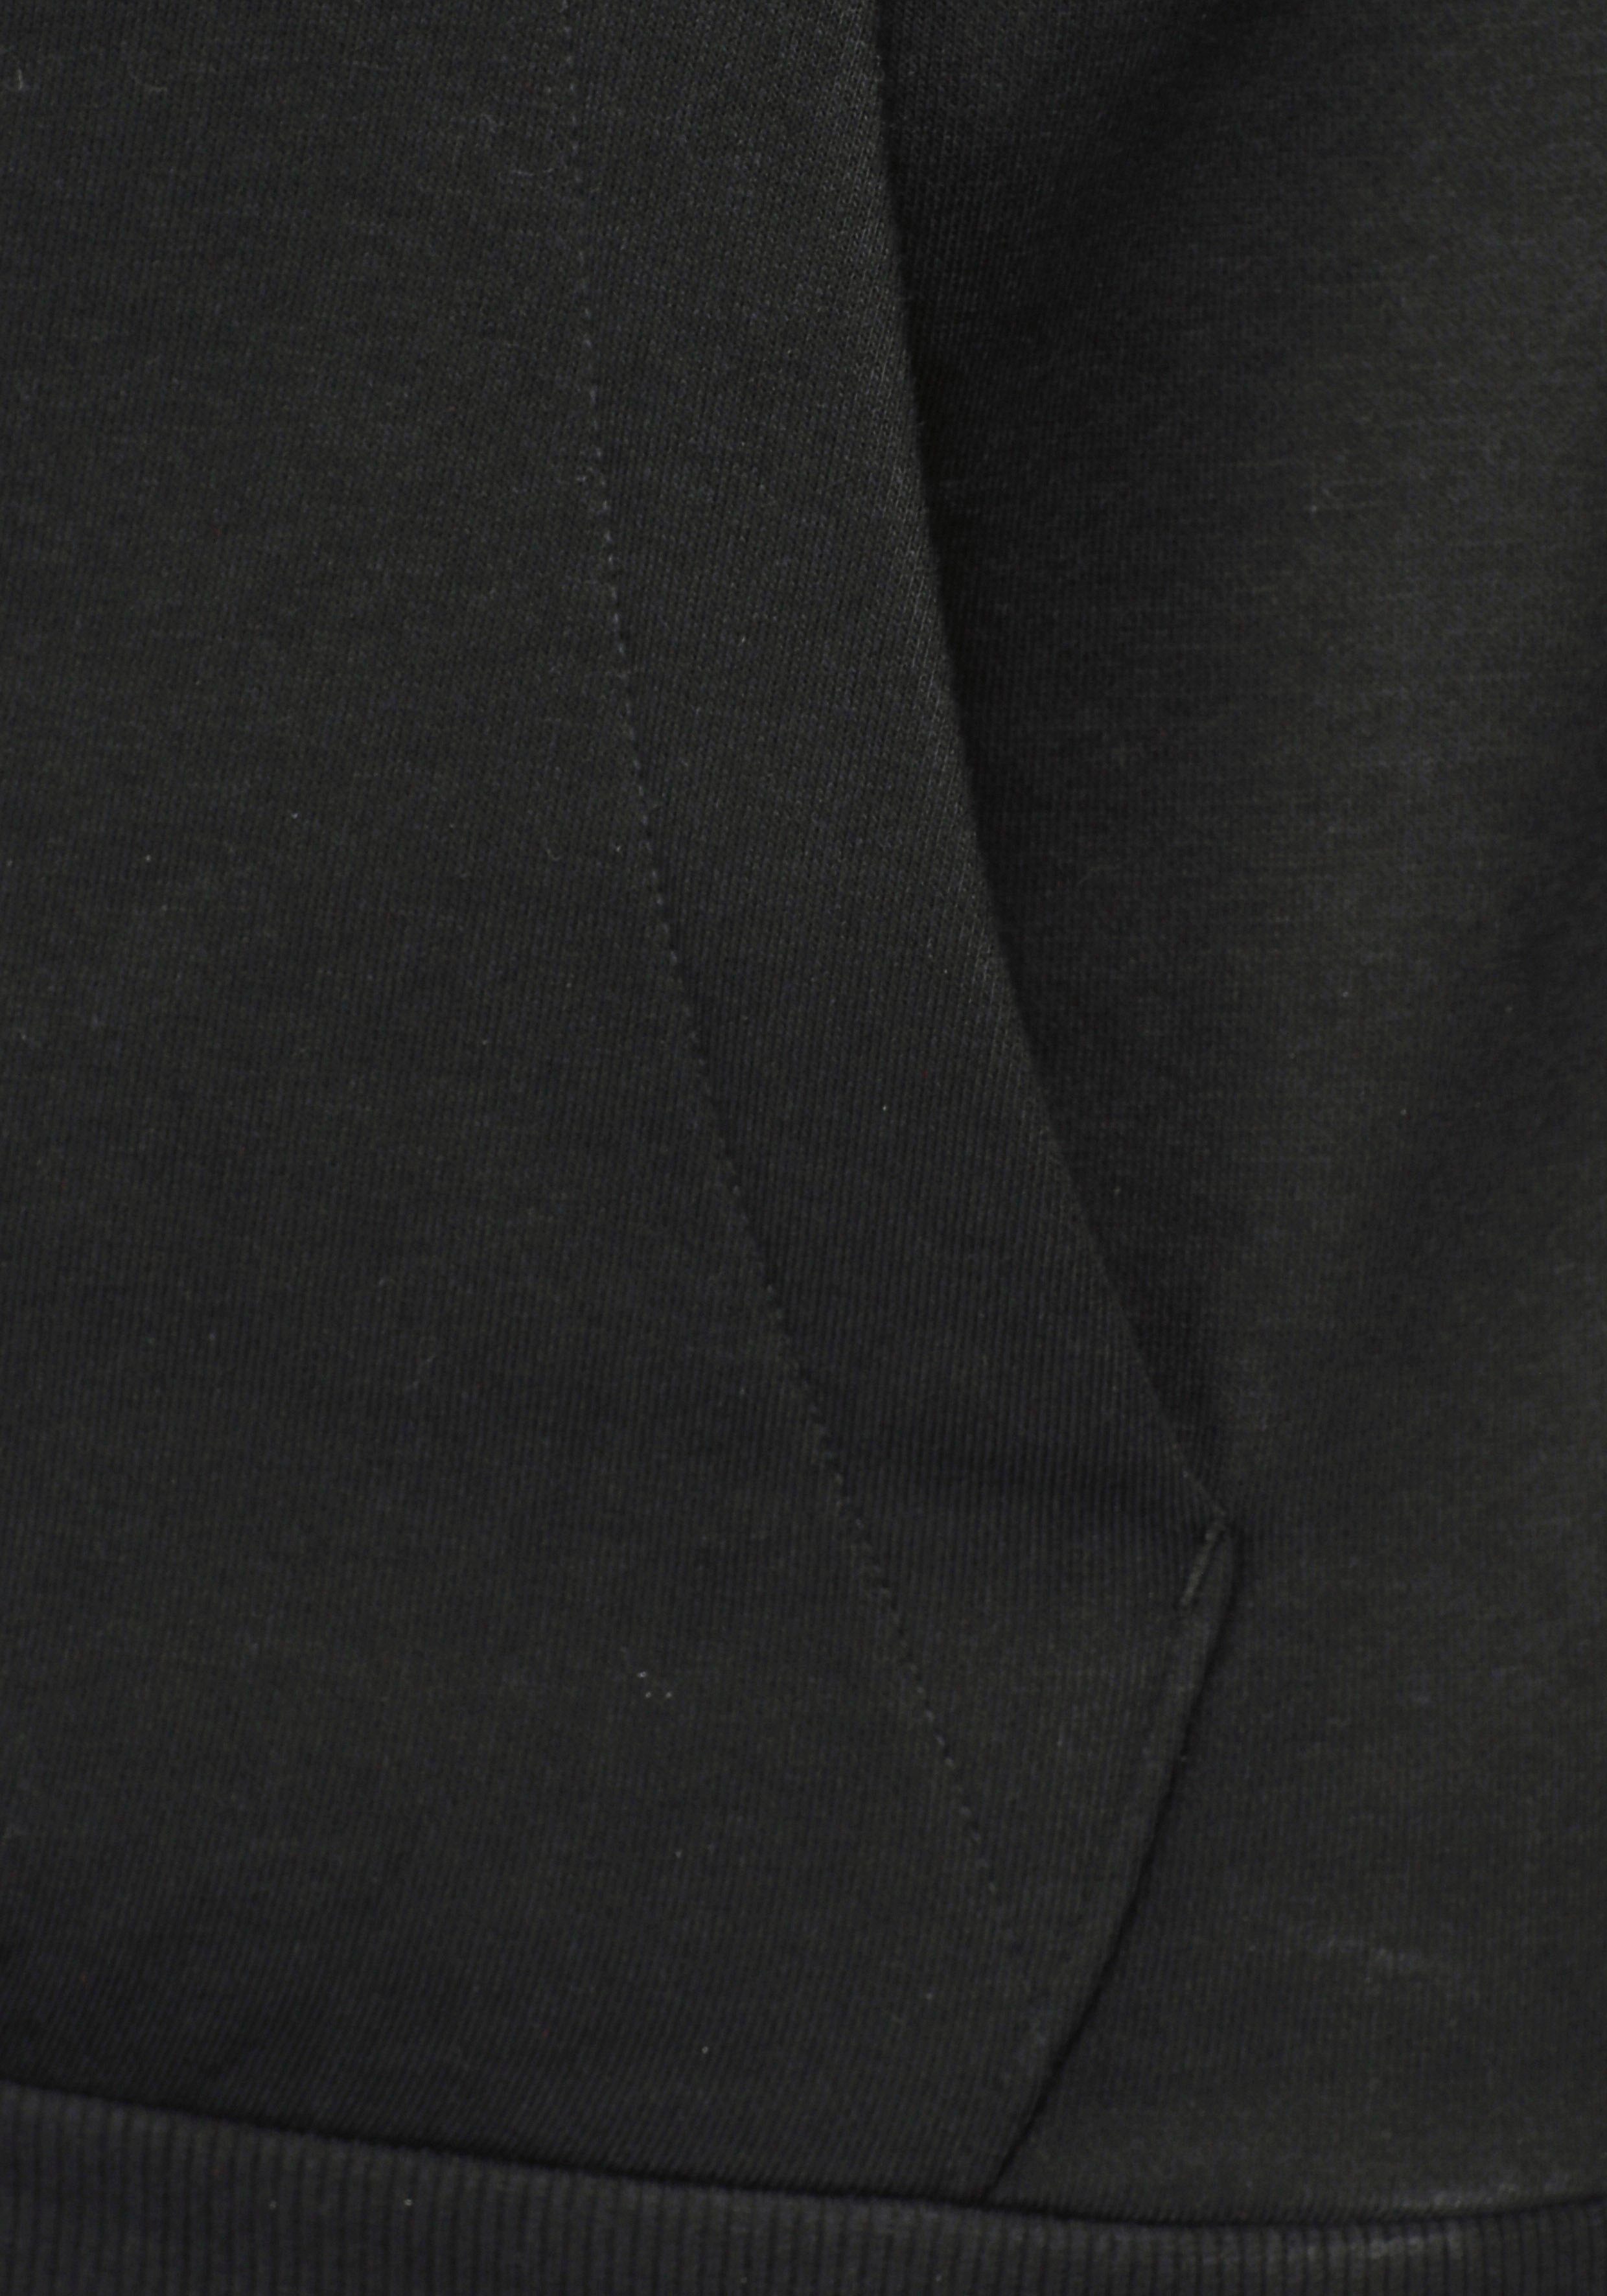 FLEECE White adidas ESSENTIALS Black Sweatshirt HOODIE Sportswear 3STREIFEN /